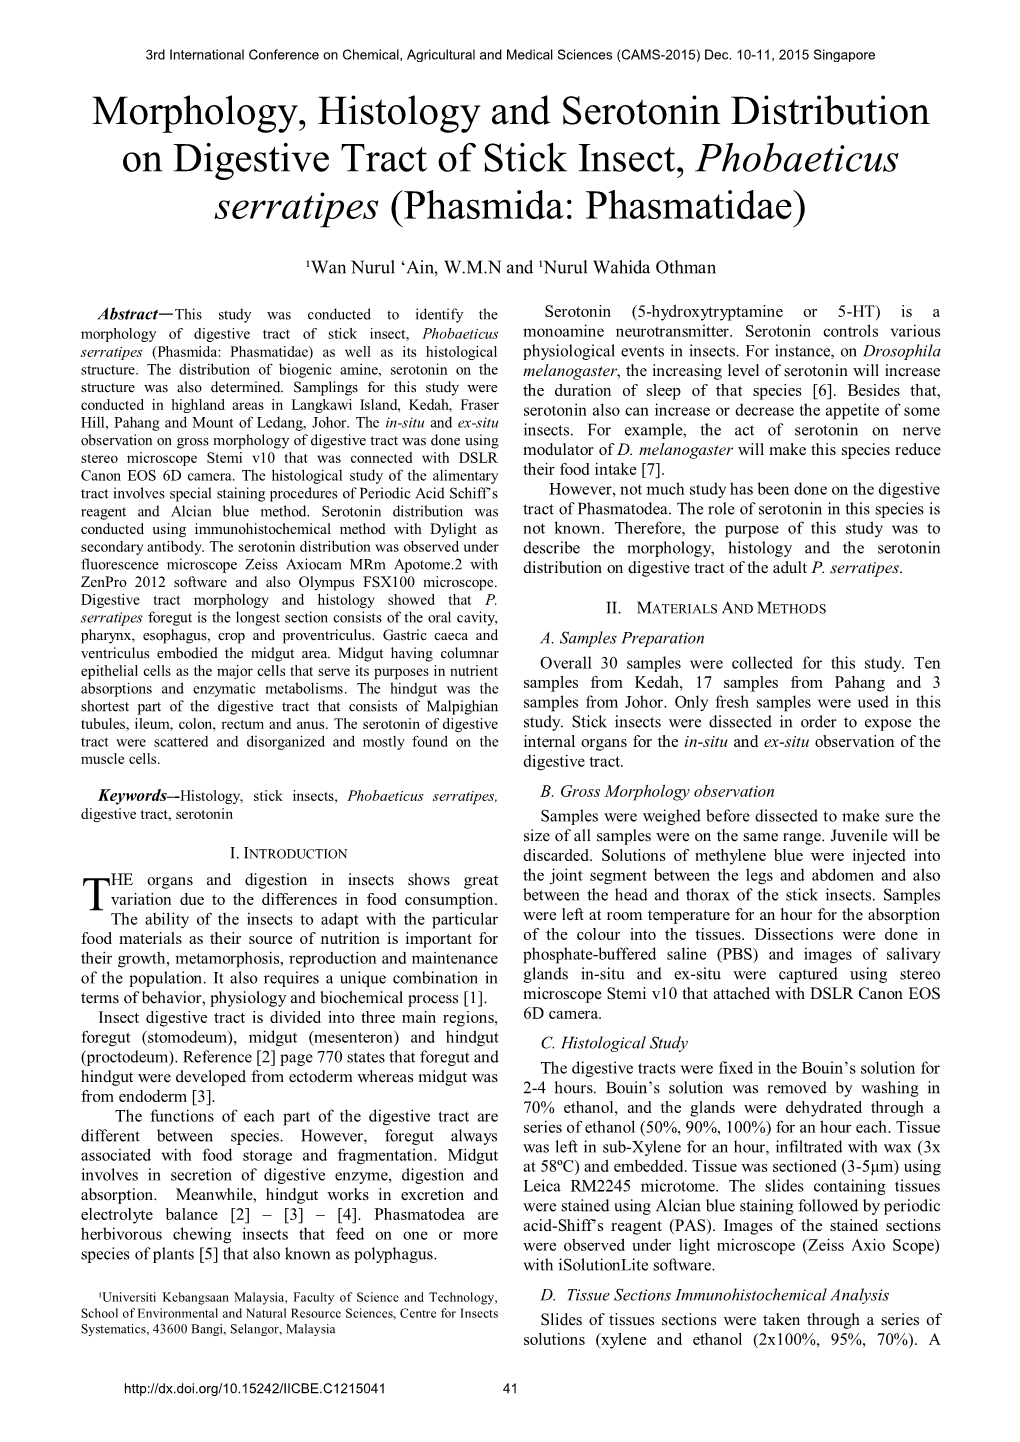 Morphology, Histology and Serotonin Distribution on Digestive Tract of Stick Insect, Phobaeticus Serratipes (Phasmida: Phasmatidae)